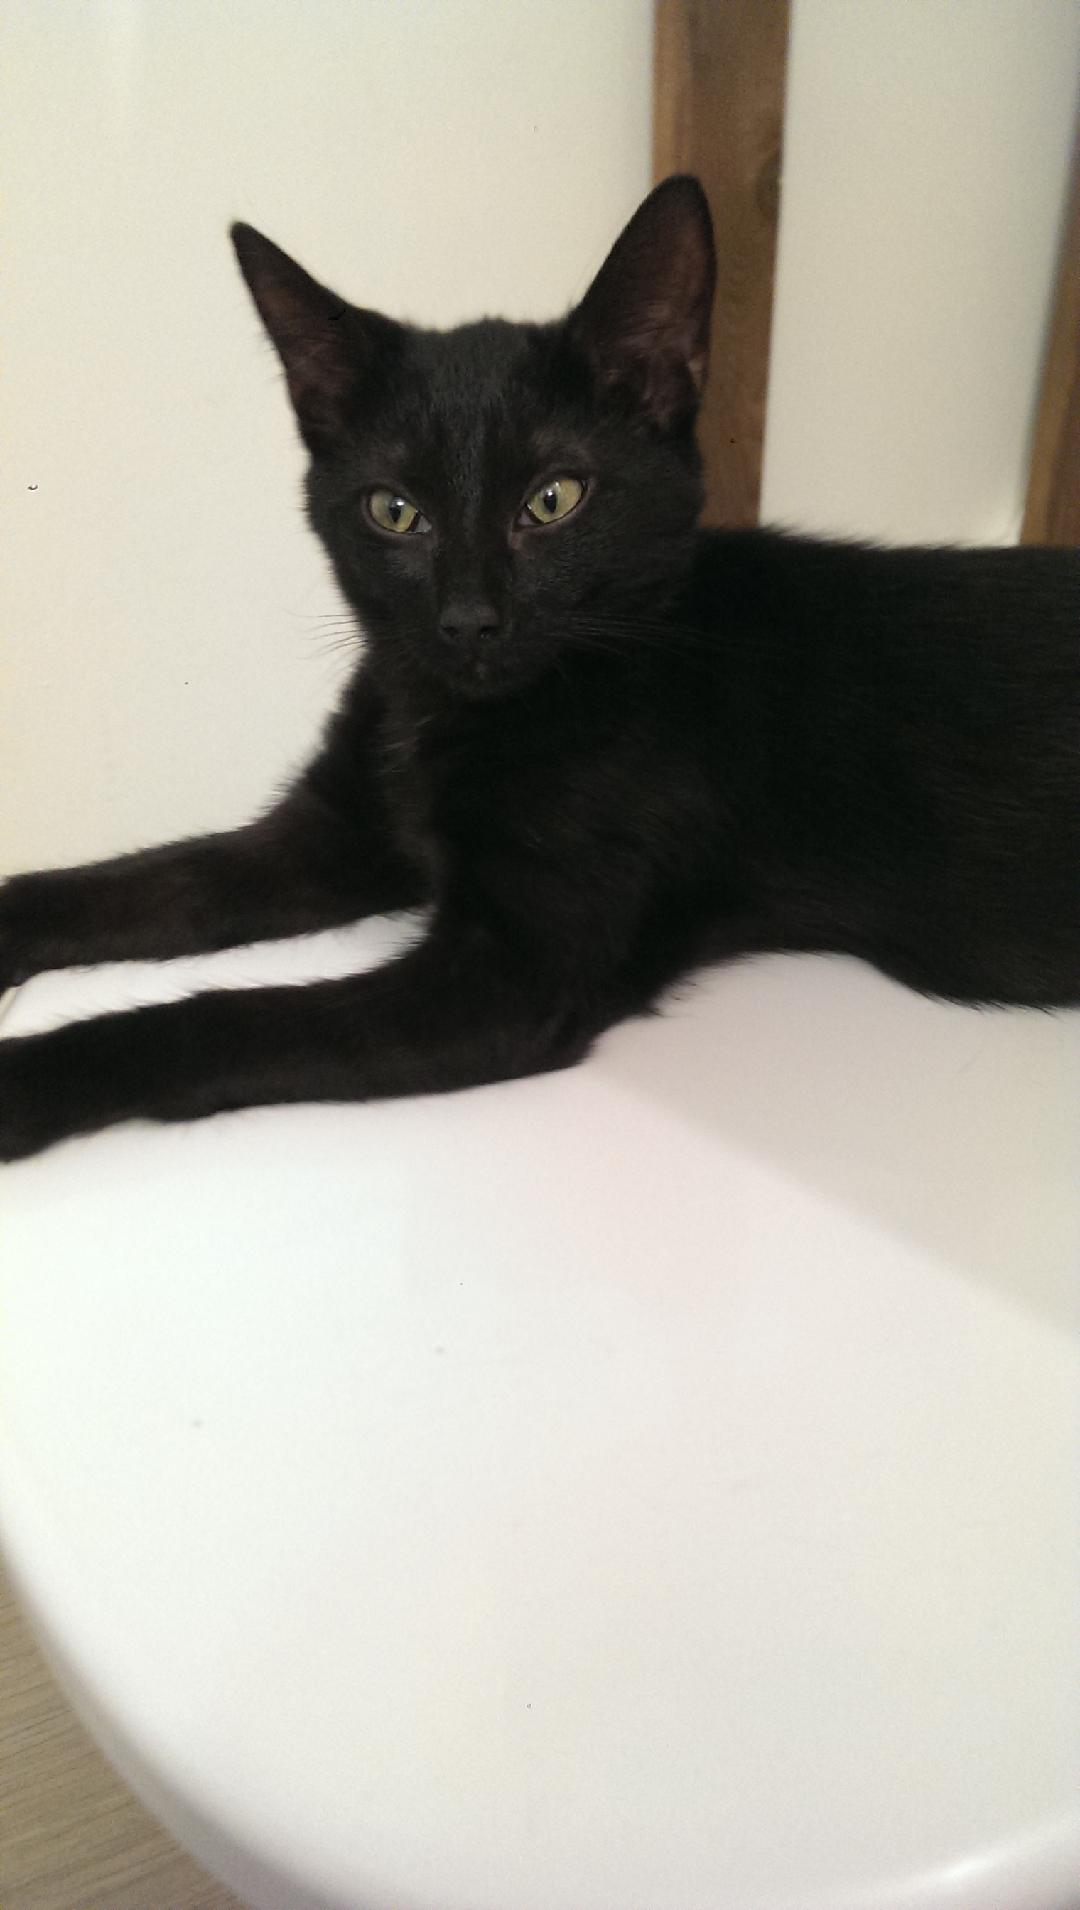 2 chatons noirs de 3,5 mois, un mâle et une femelle